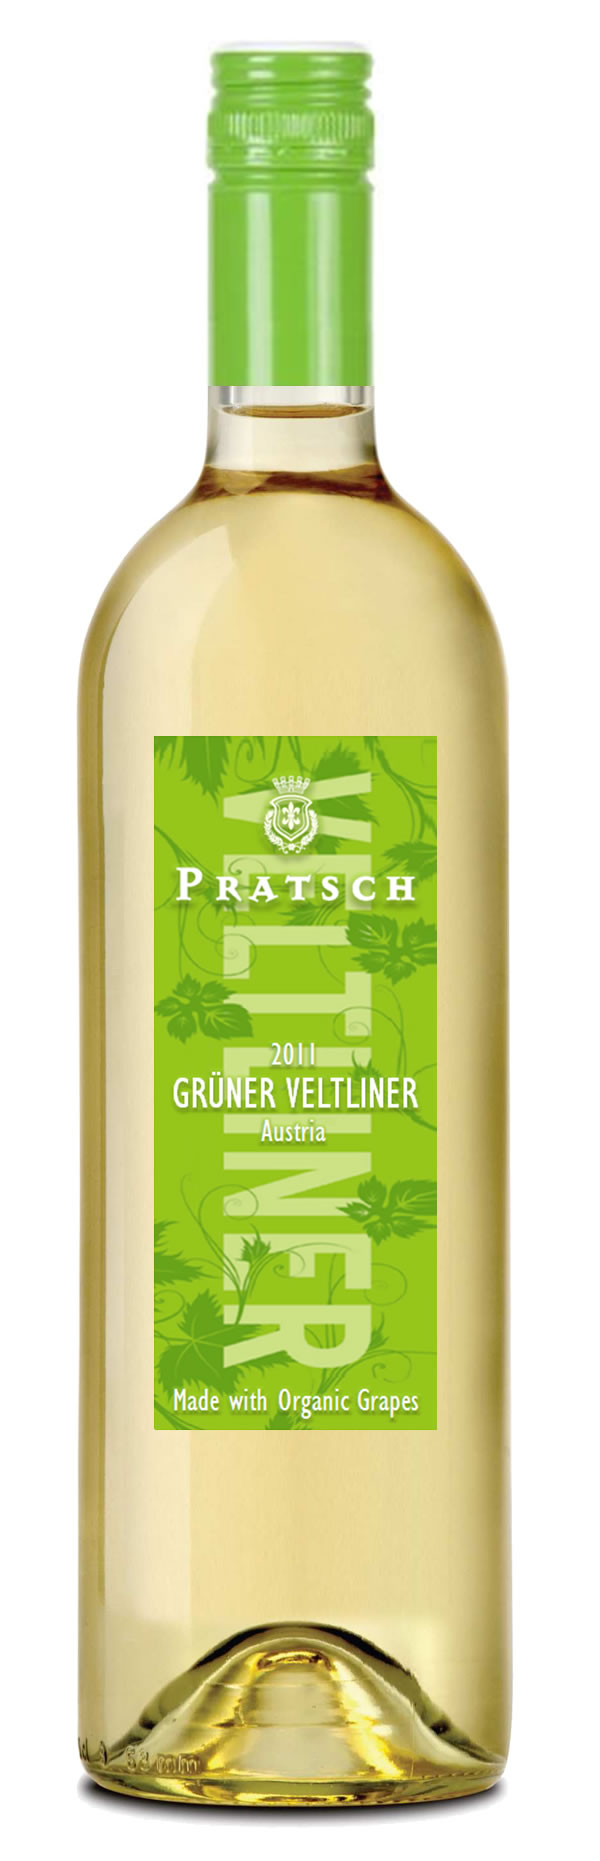 Pratsch Gruner Veltliner 2019 1.0Ltr